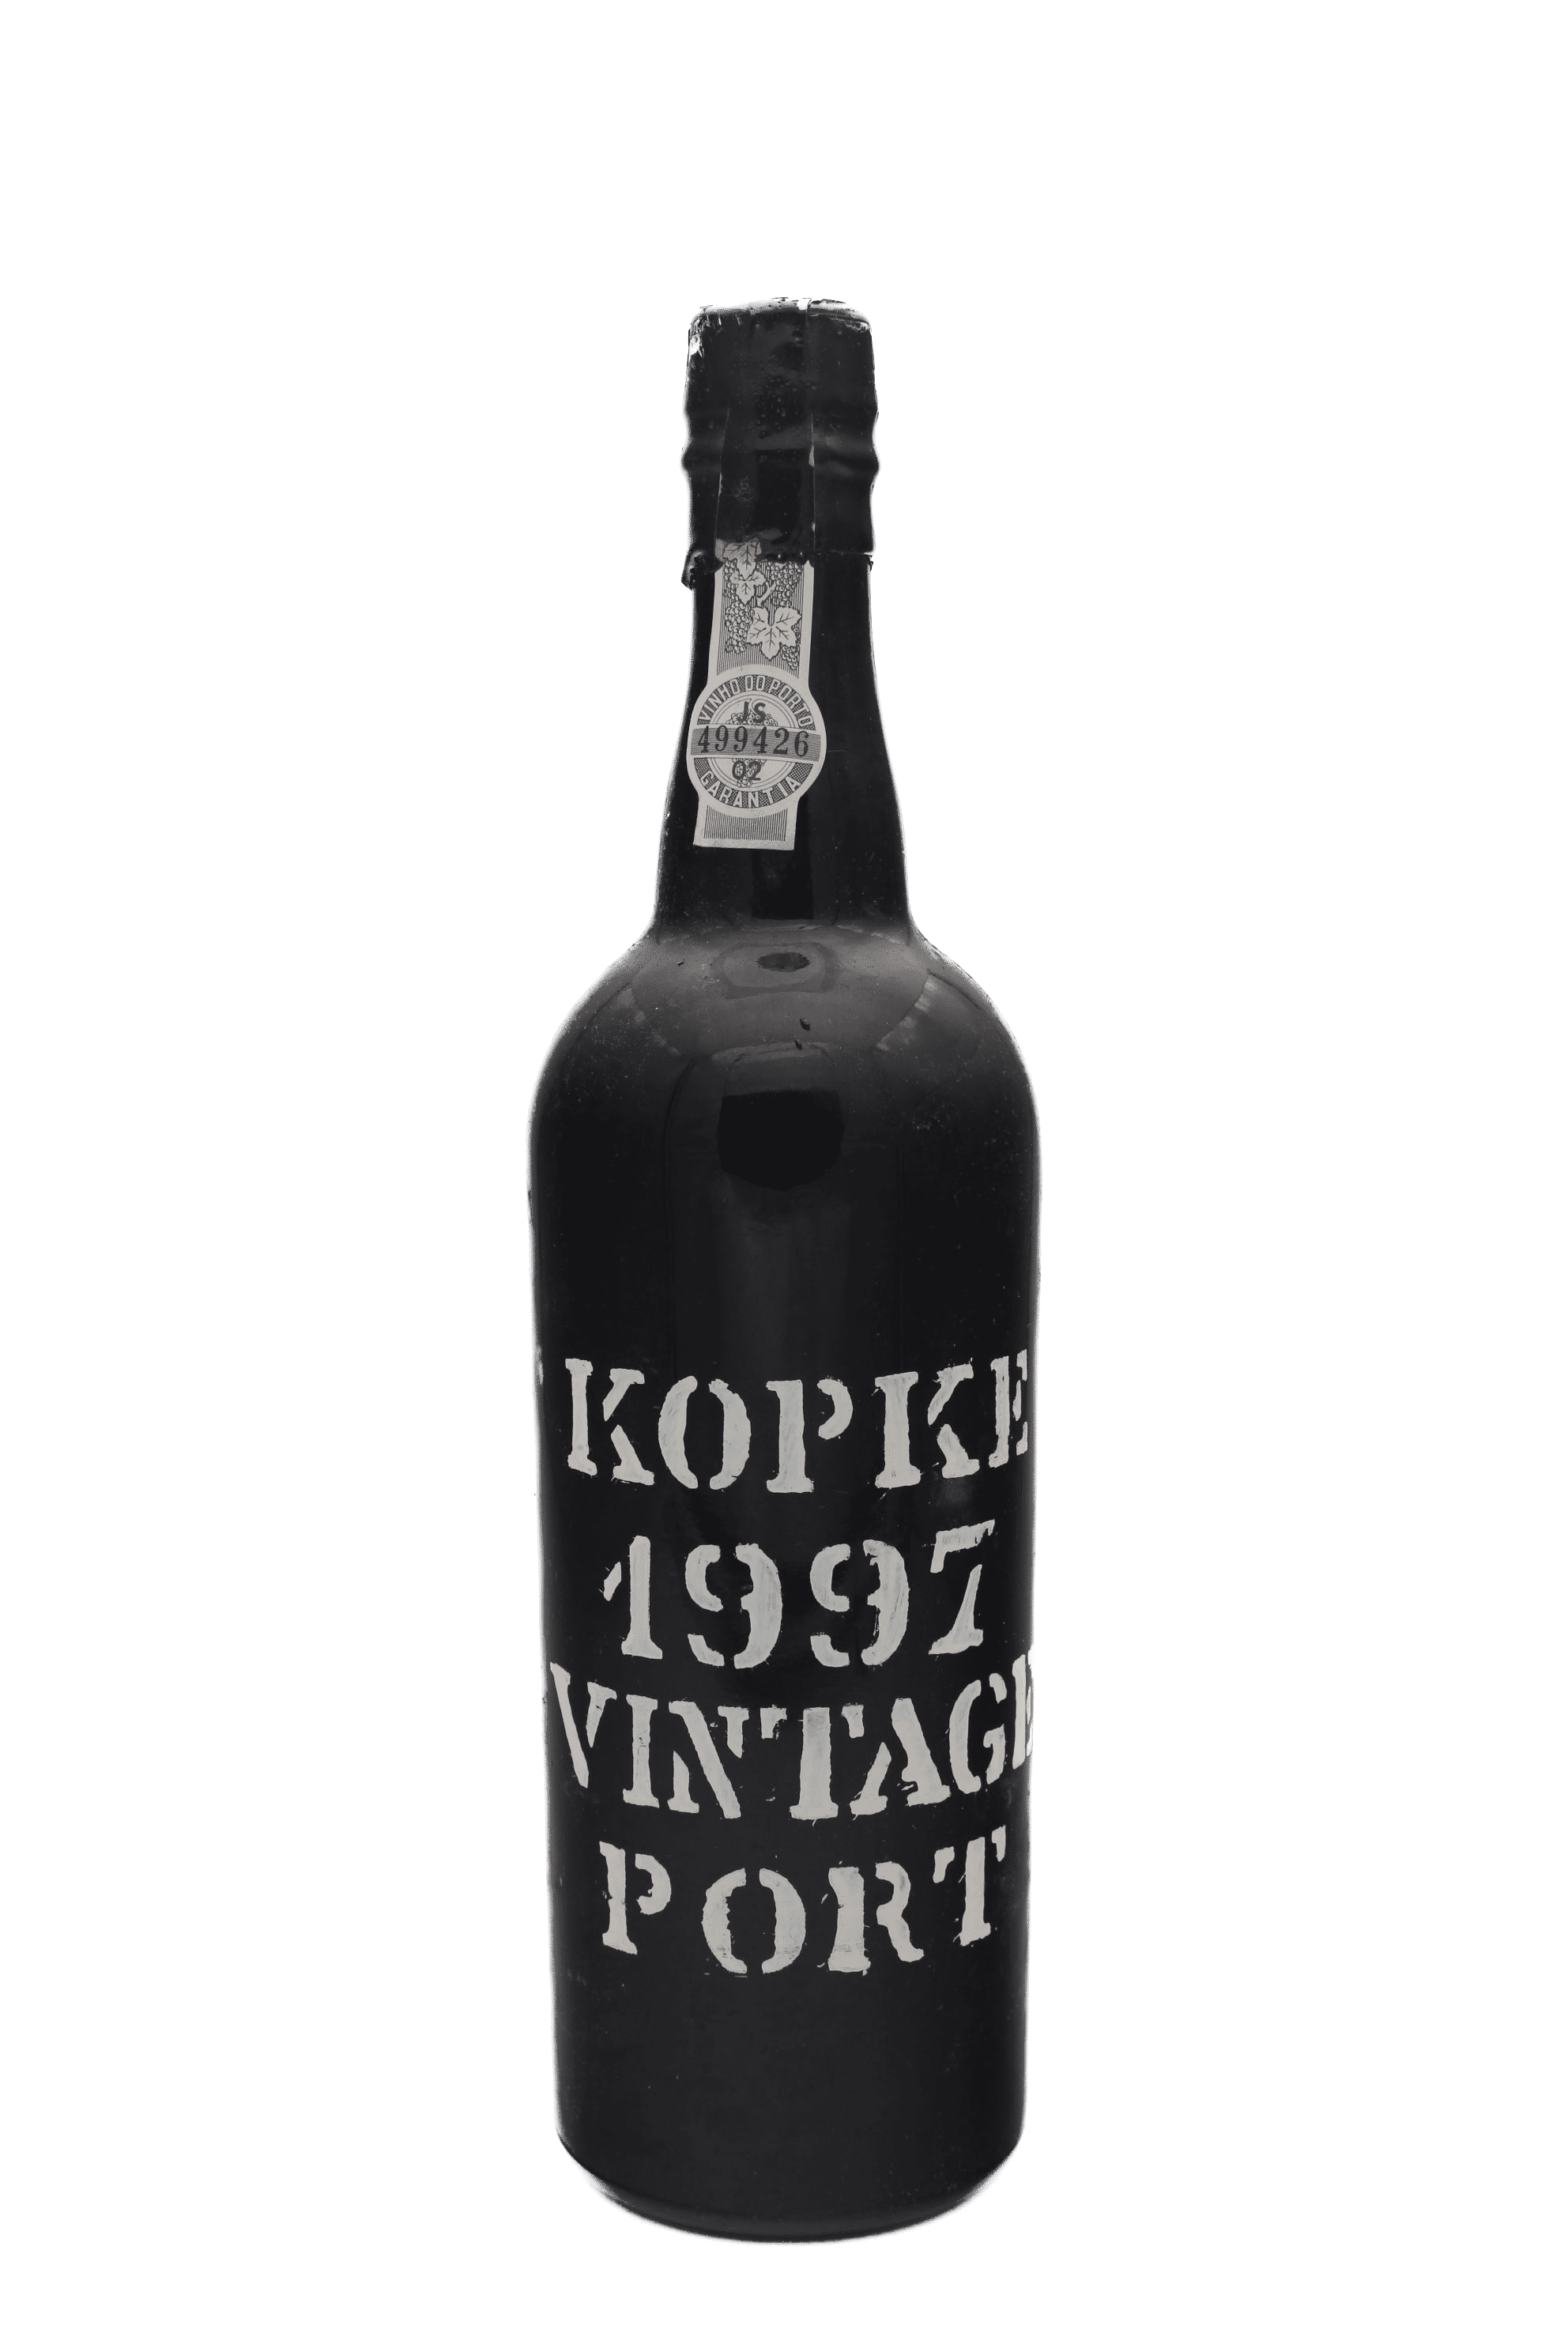 Kopke - Vintage Port 1997